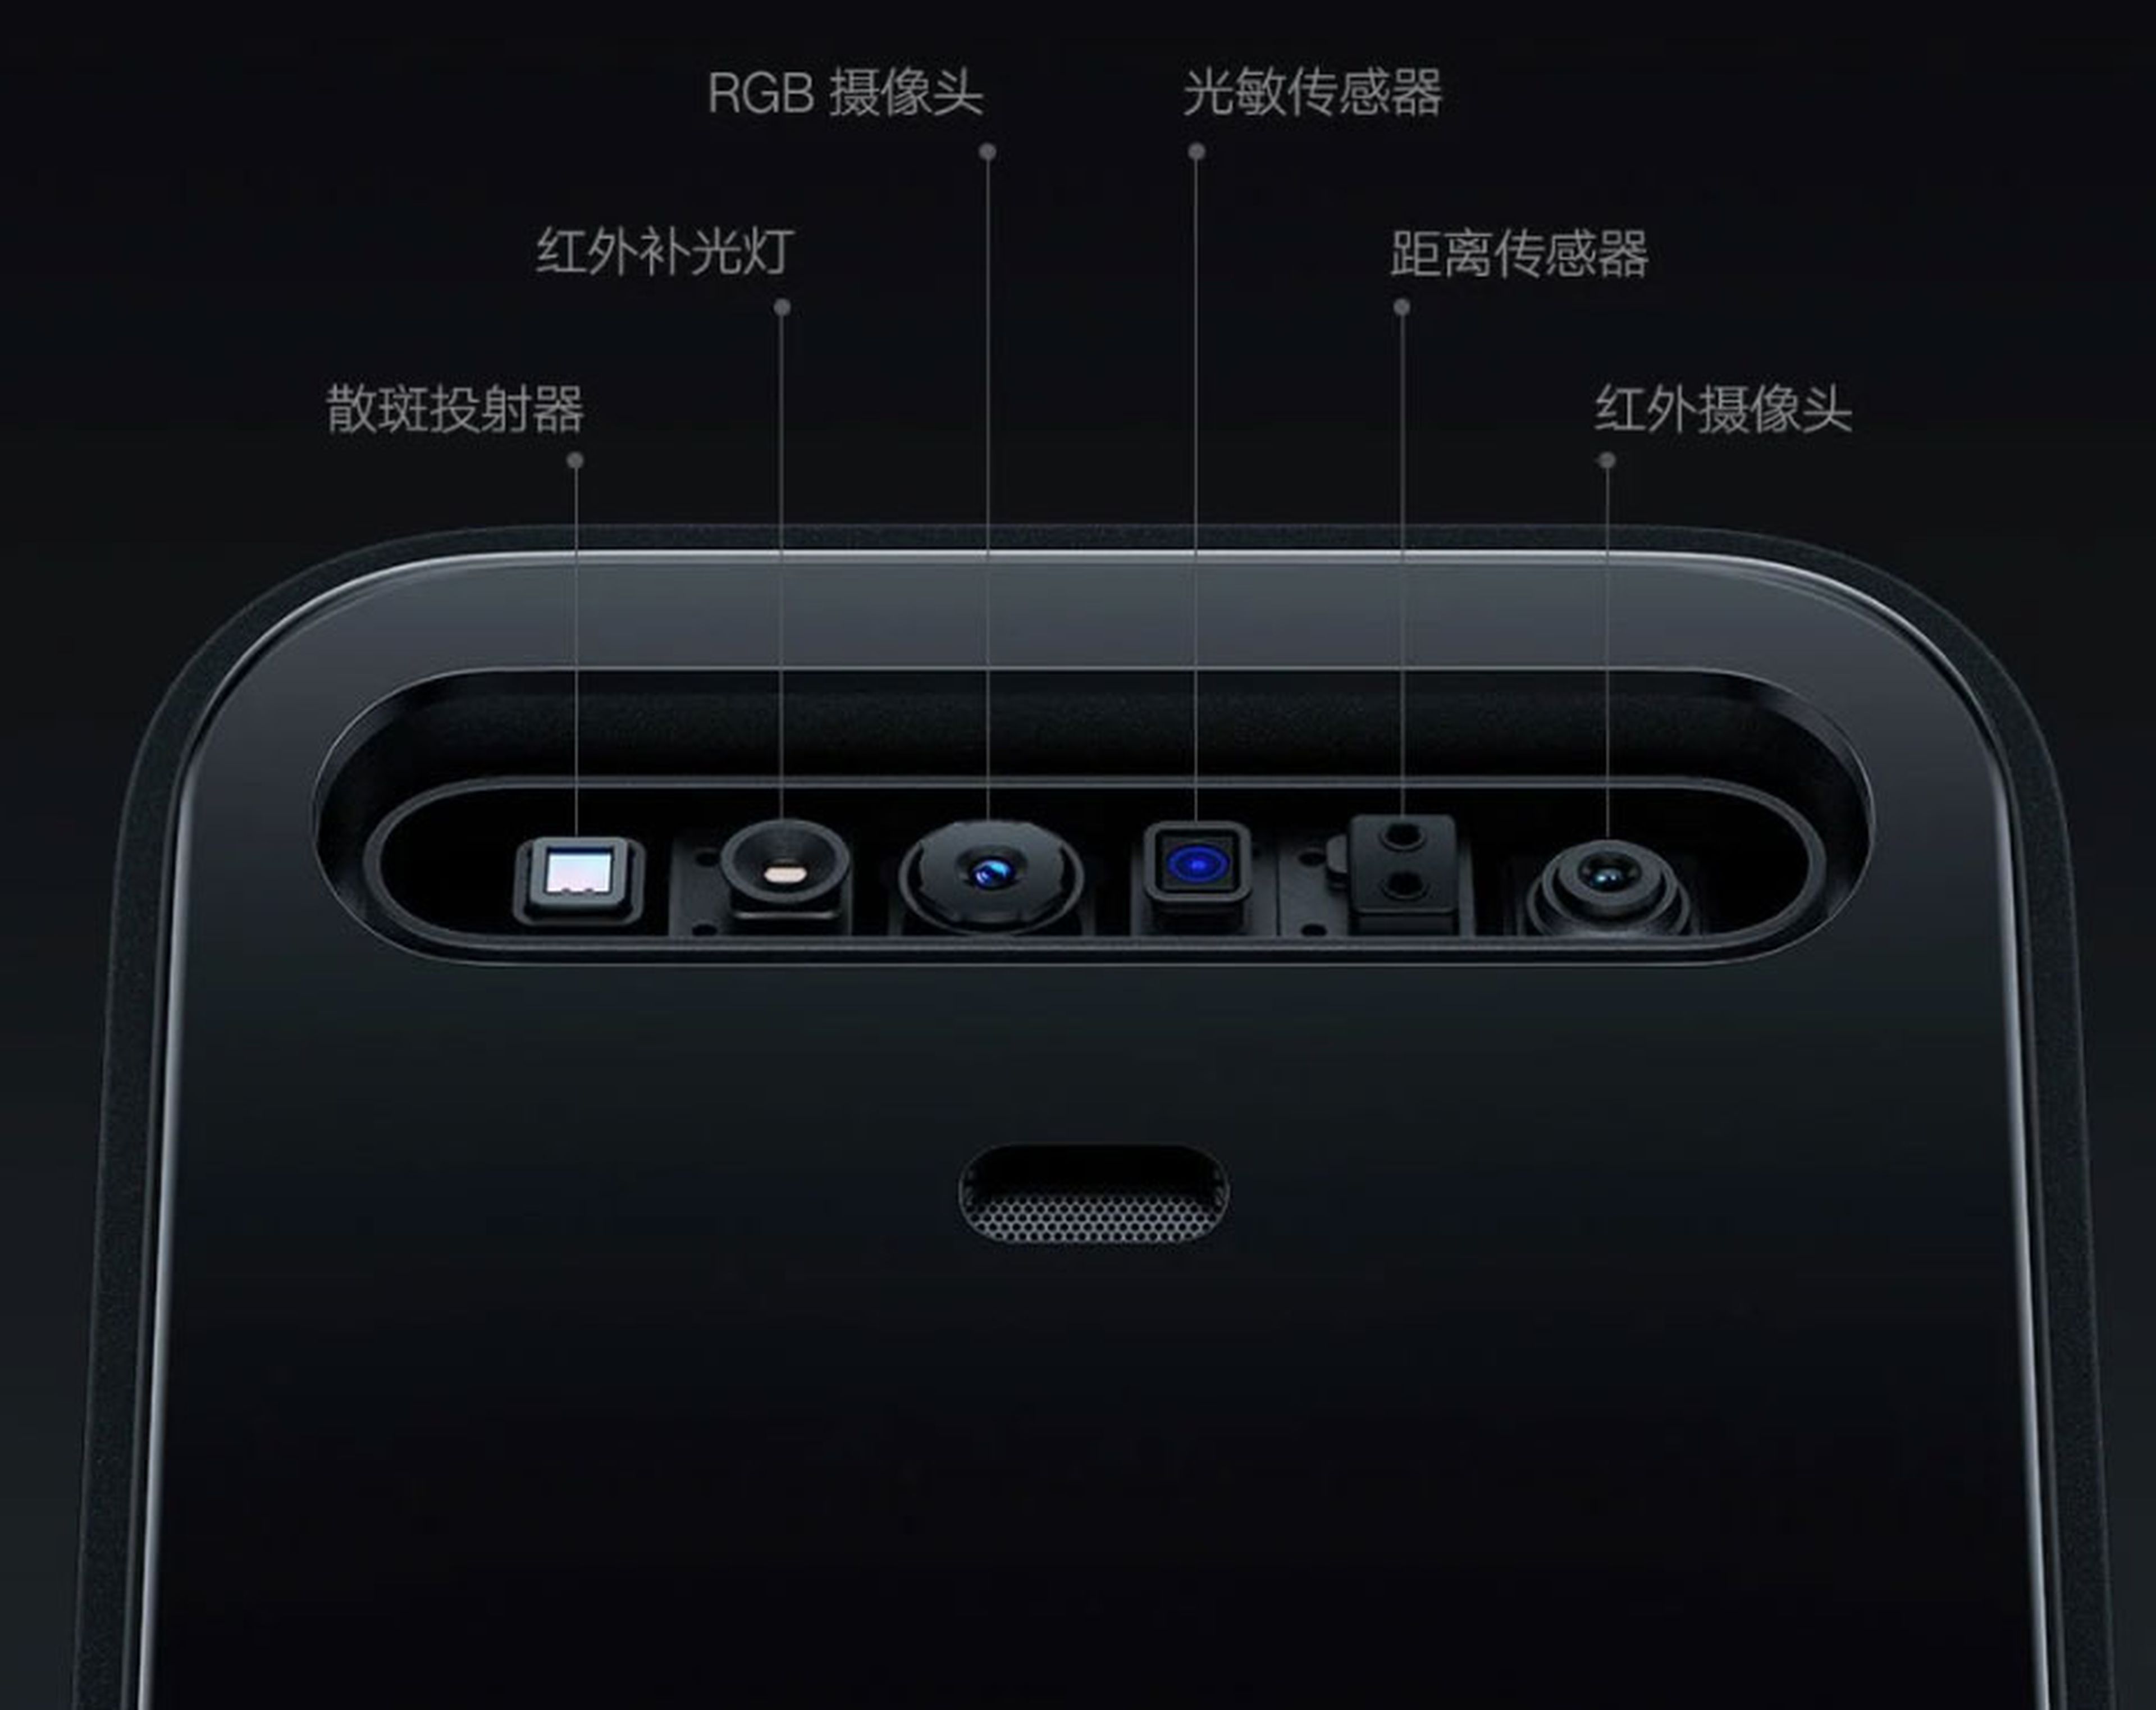 Xiaomi Smart Door Lock X